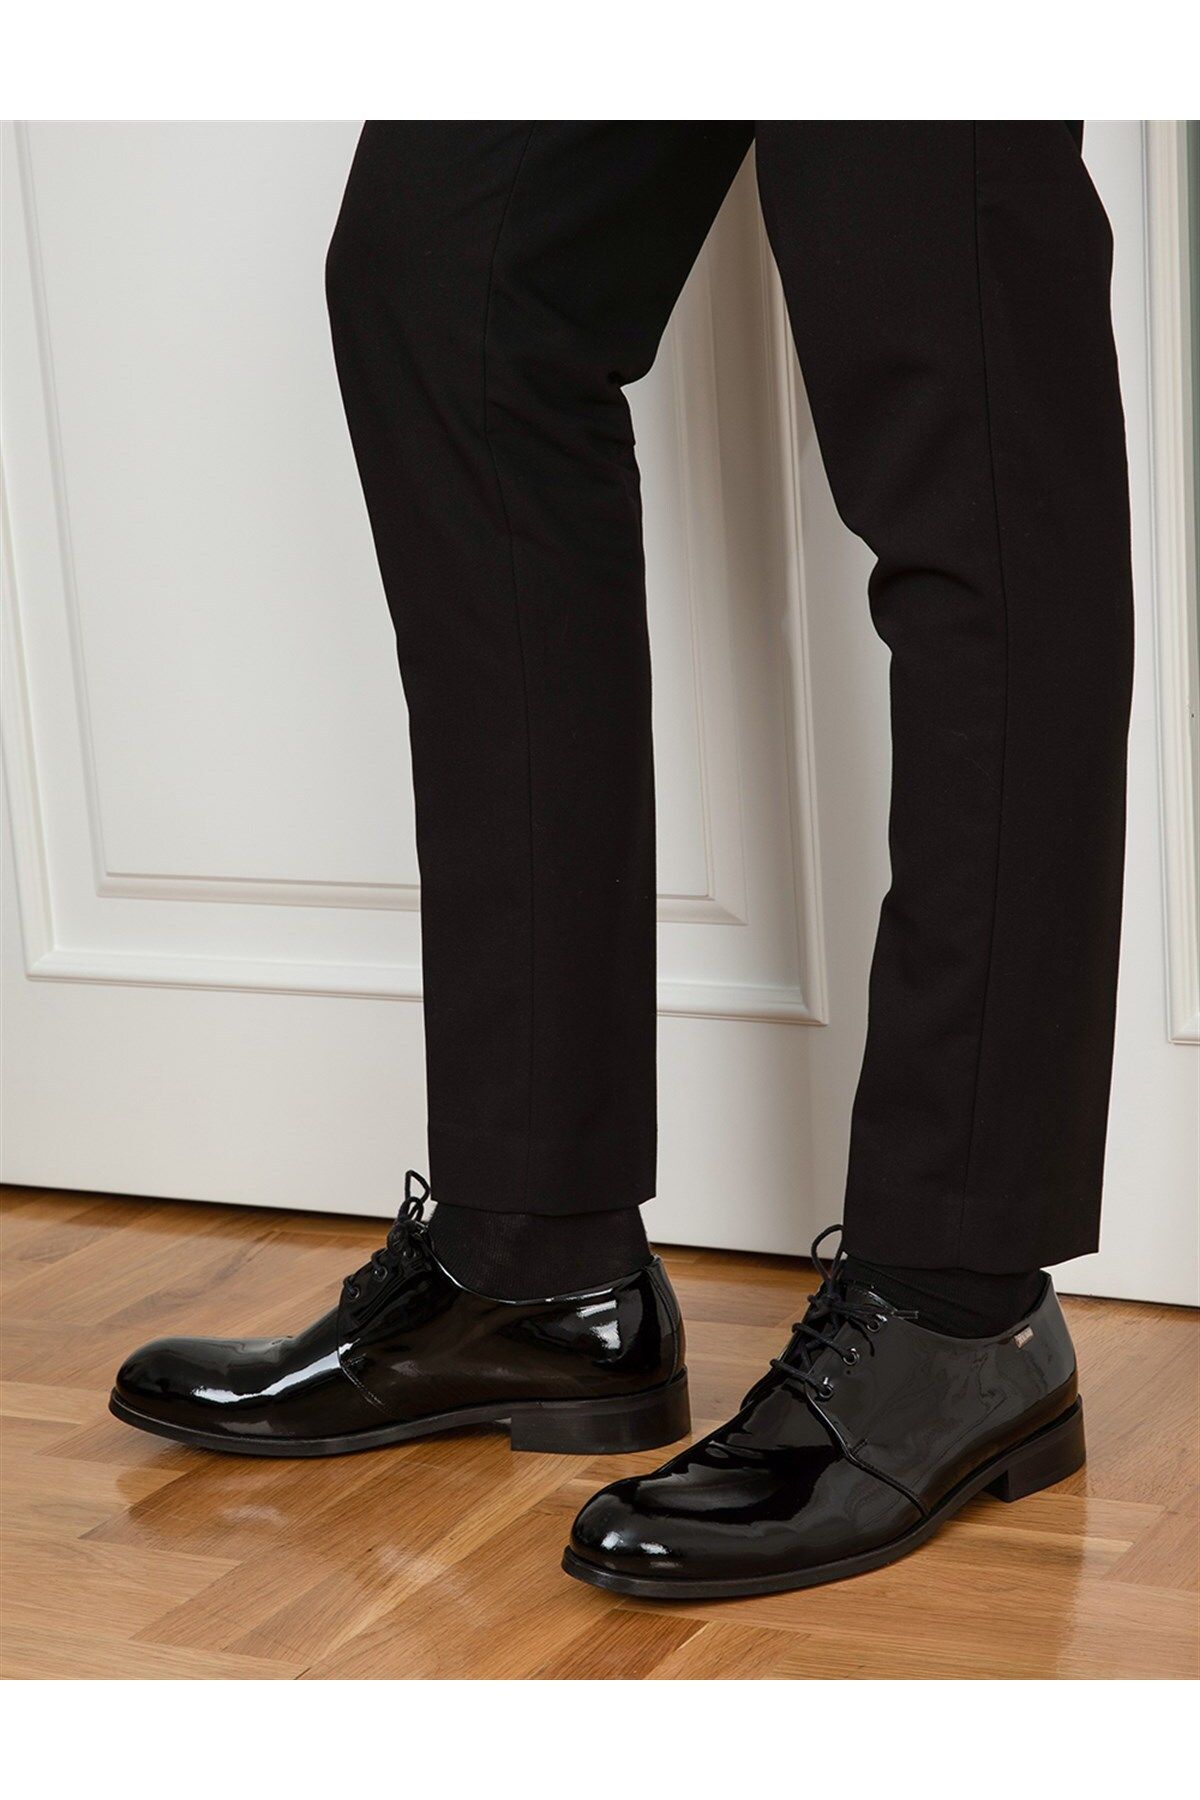 İlvi Kumla Hakiki Rugan Deri Erkek Siyah Klasik Ayakkabı